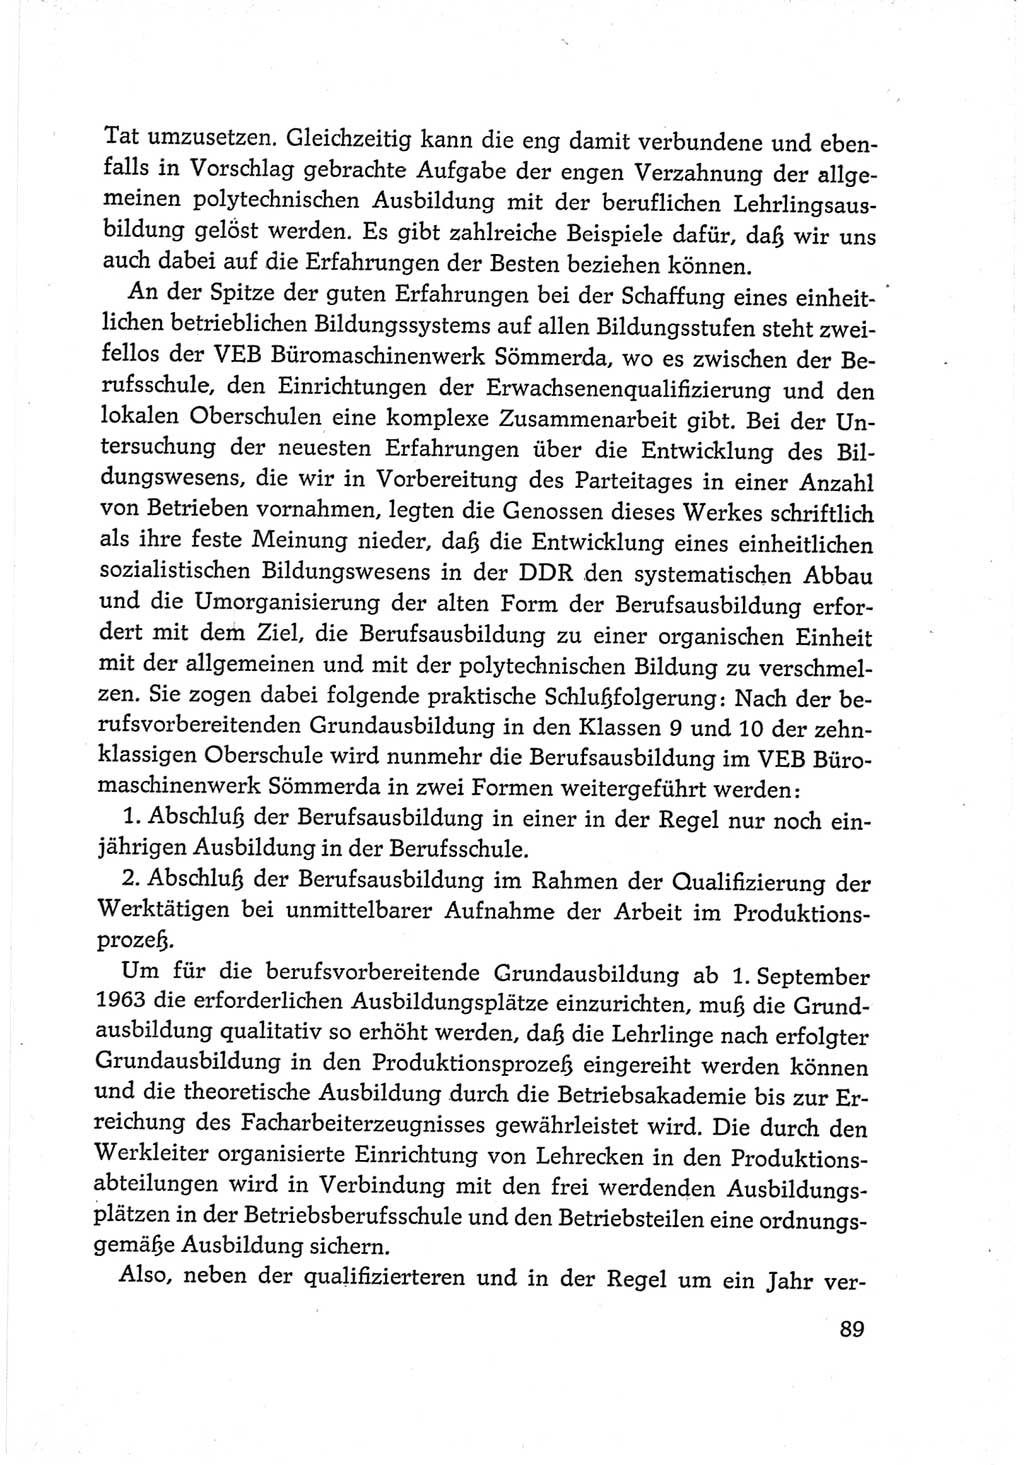 Protokoll der Verhandlungen des Ⅵ. Parteitages der Sozialistischen Einheitspartei Deutschlands (SED) [Deutsche Demokratische Republik (DDR)] 1963, Band Ⅲ, Seite 89 (Prot. Verh. Ⅵ. PT SED DDR 1963, Bd. Ⅲ, S. 89)